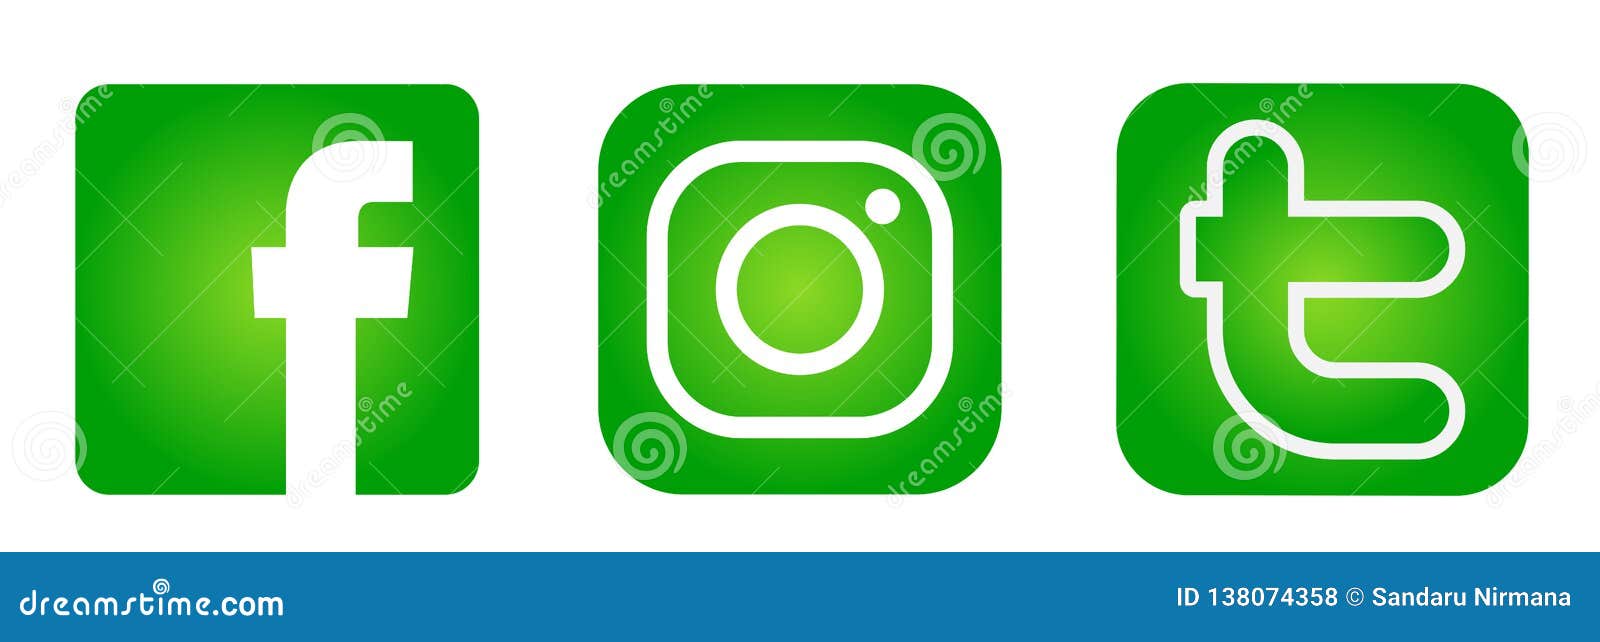 Bộ biểu tượng logo mạng xã hội phổ biến như Instagram, Facebook, Twitter sẽ giúp bạn trang trí cho bài đăng của mình thêm phần sinh động và nổi bật. Hình nền Instagram màu xanh sẽ giúp tôn lên sắc xanh và làm nổi bật những biểu tượng trên đó.